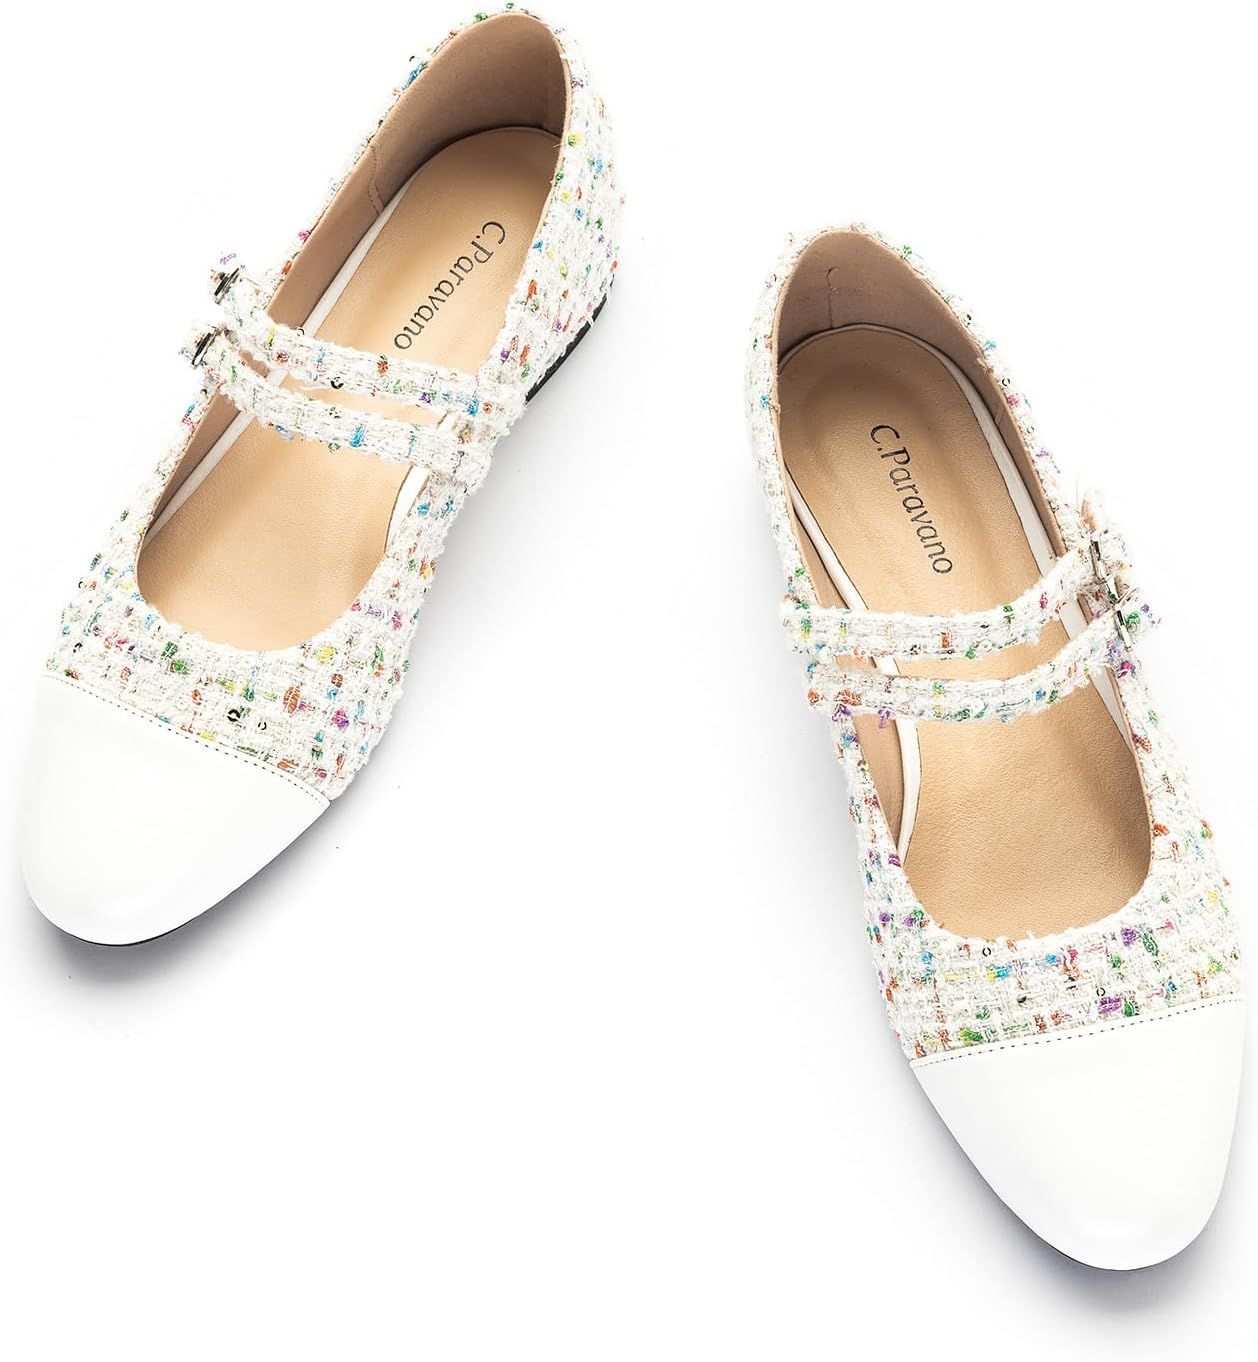 C.Paravano Mary Jane Shoes for Women | Women's Flats | Round Toe Mary Jane Flats | Dress Flats Sh... | Amazon (US)